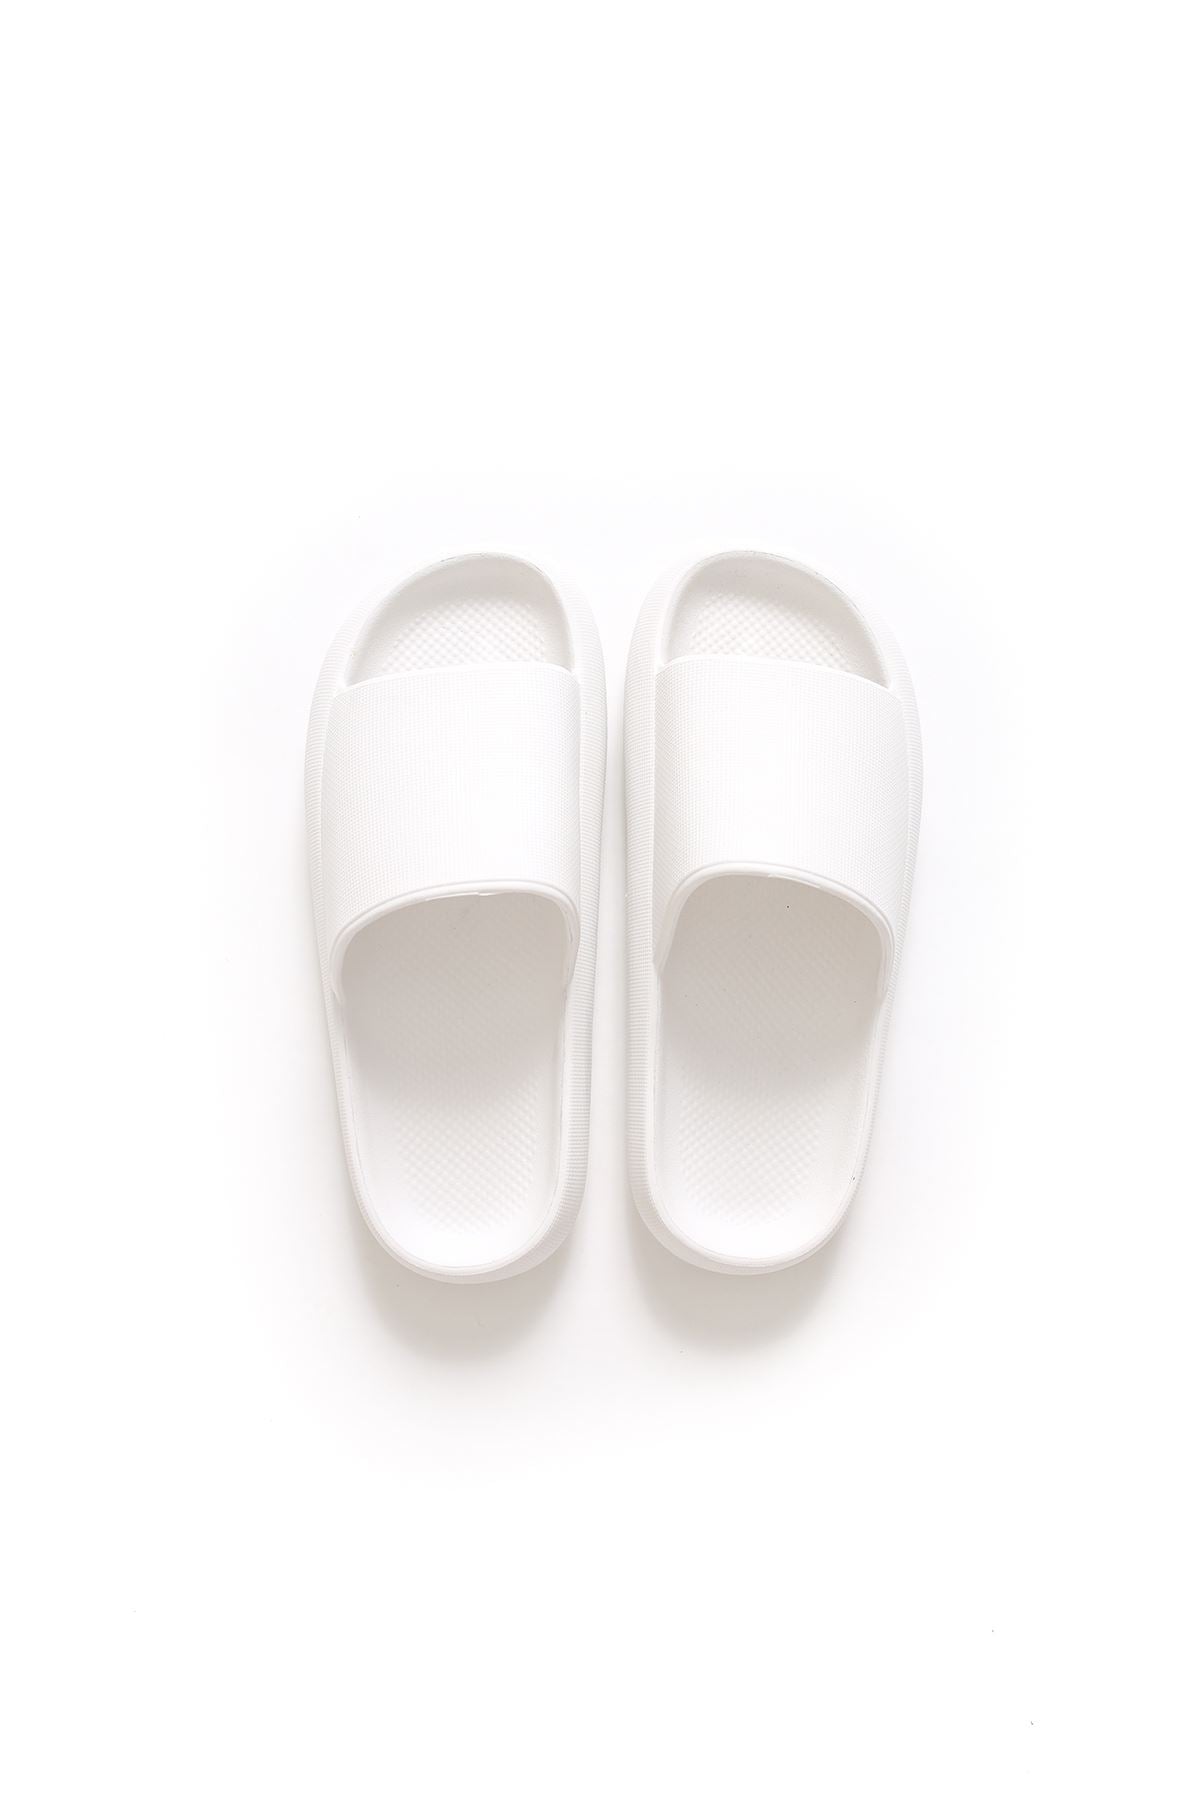 STM Design Cool Men's Slippers WHITE - STREET MODE ™